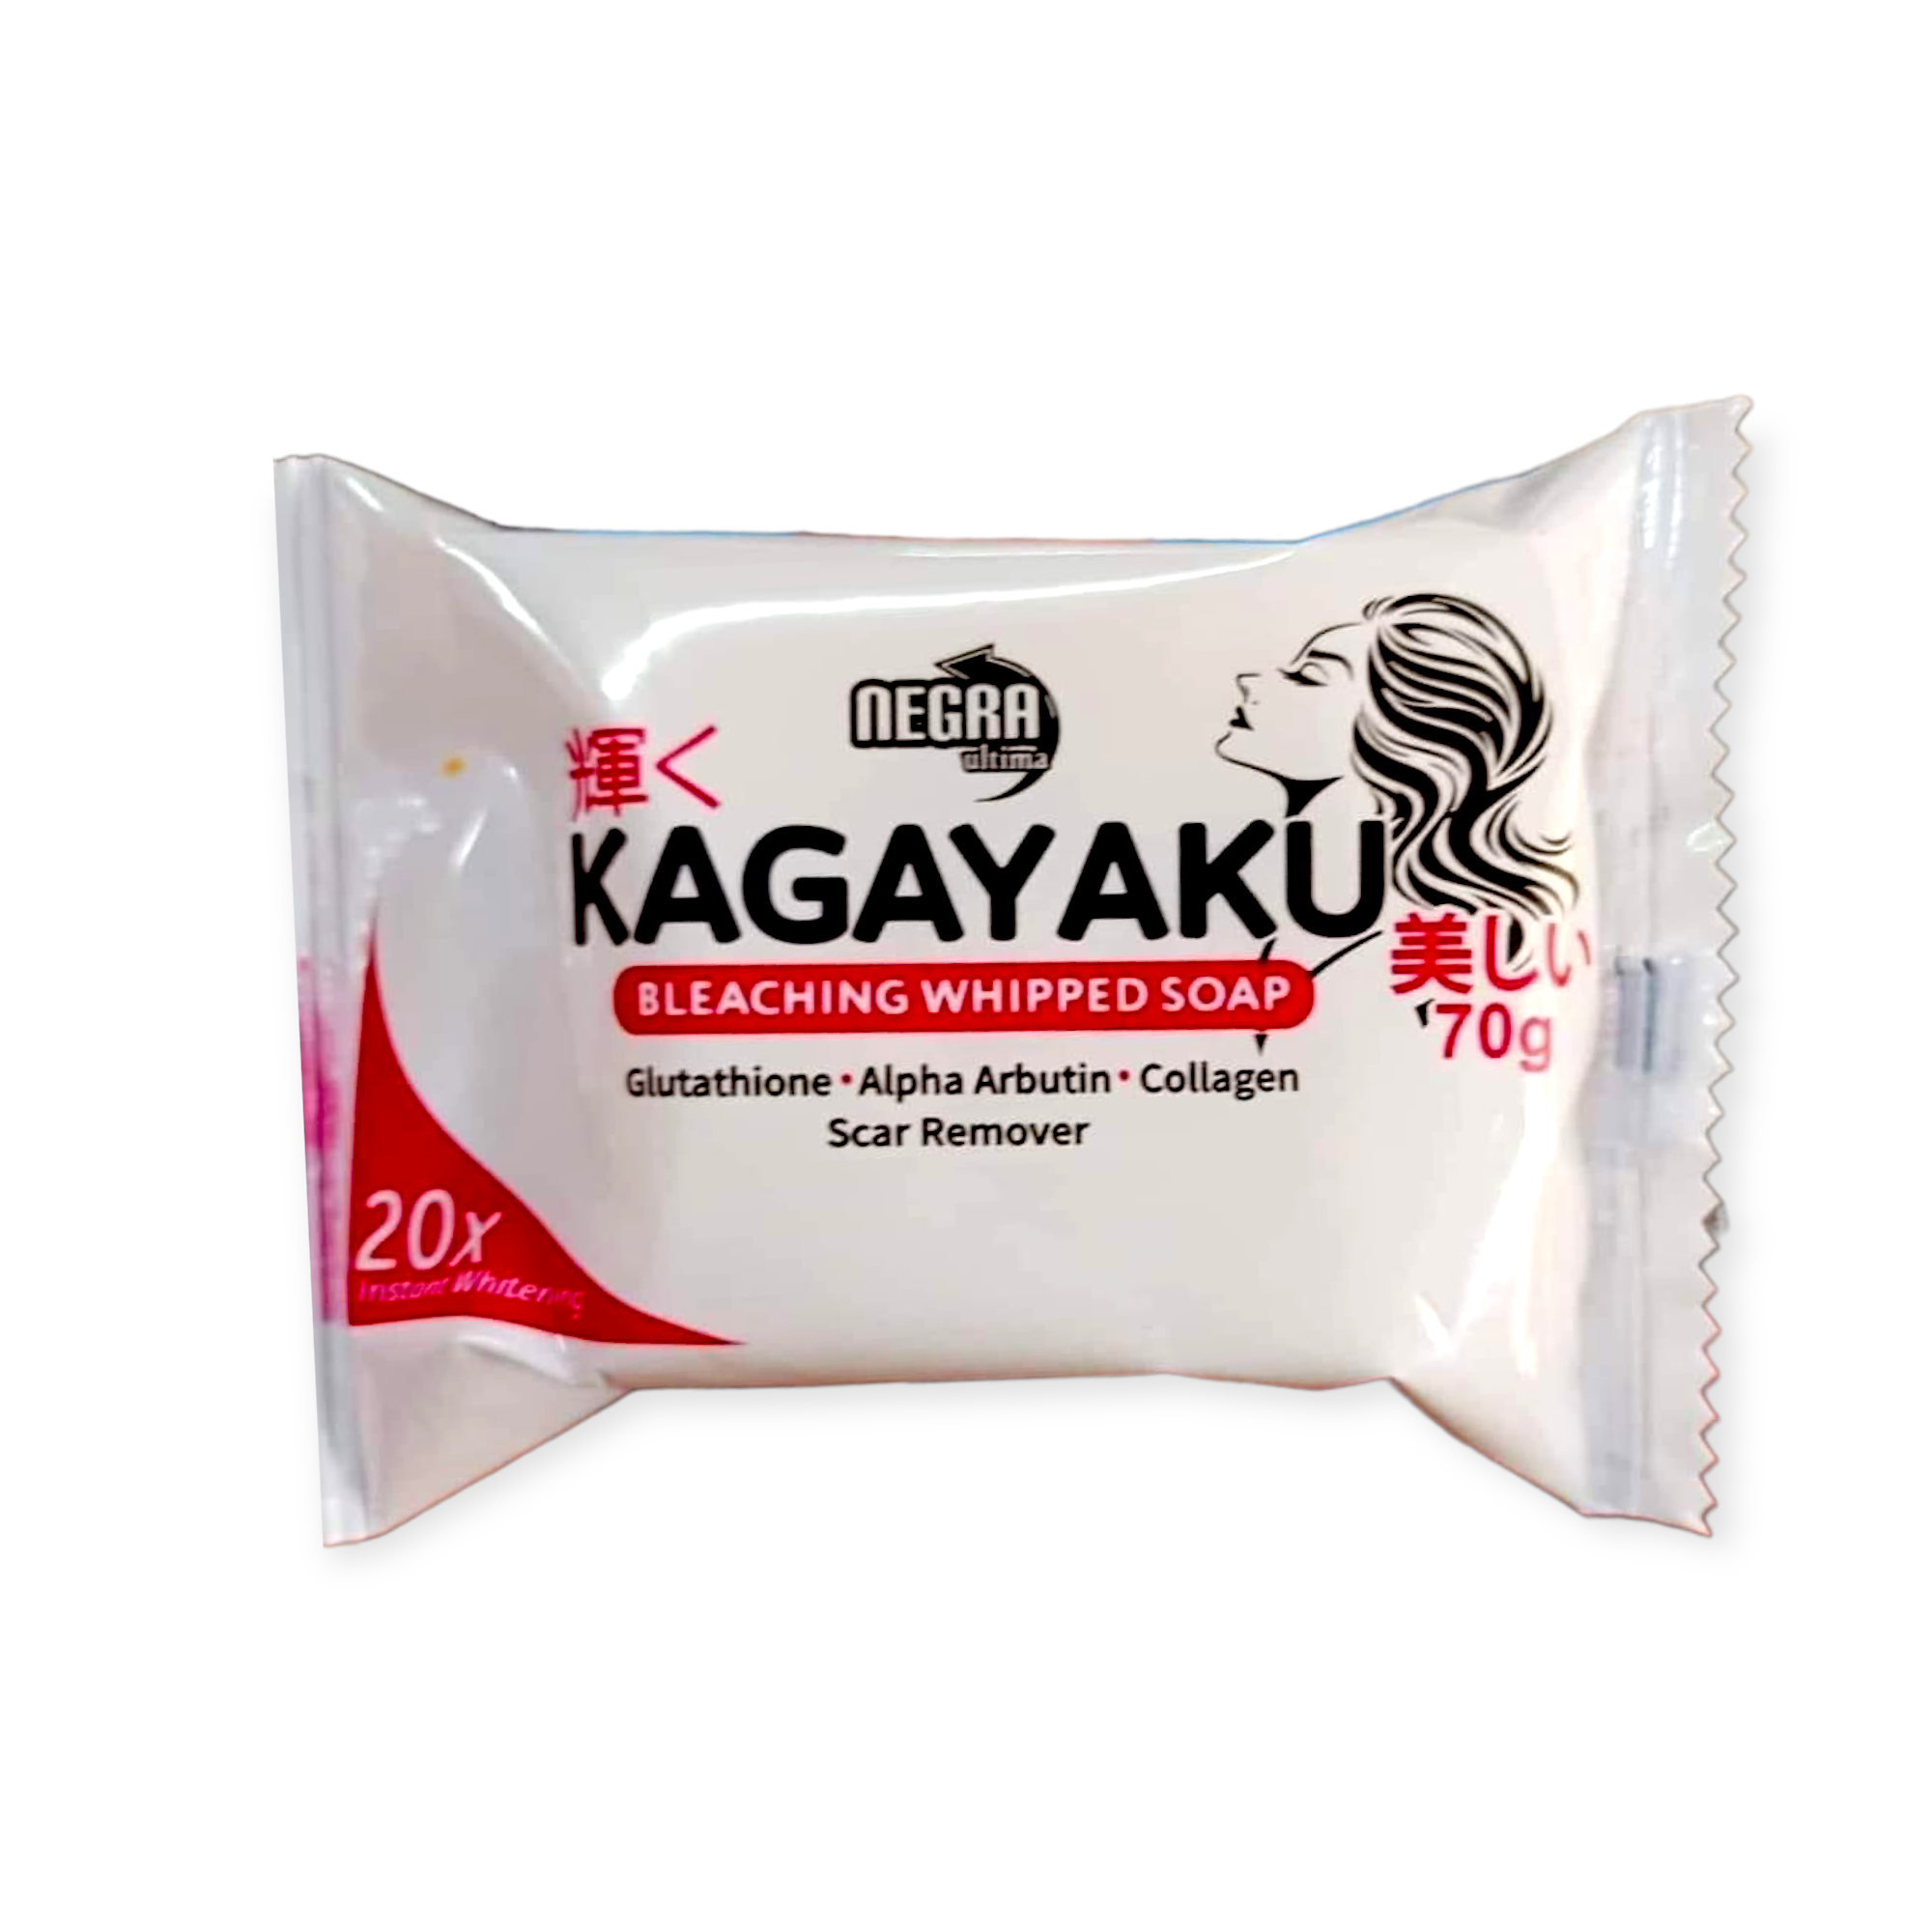 KAGAYAKU SOAP 70g 4pcs